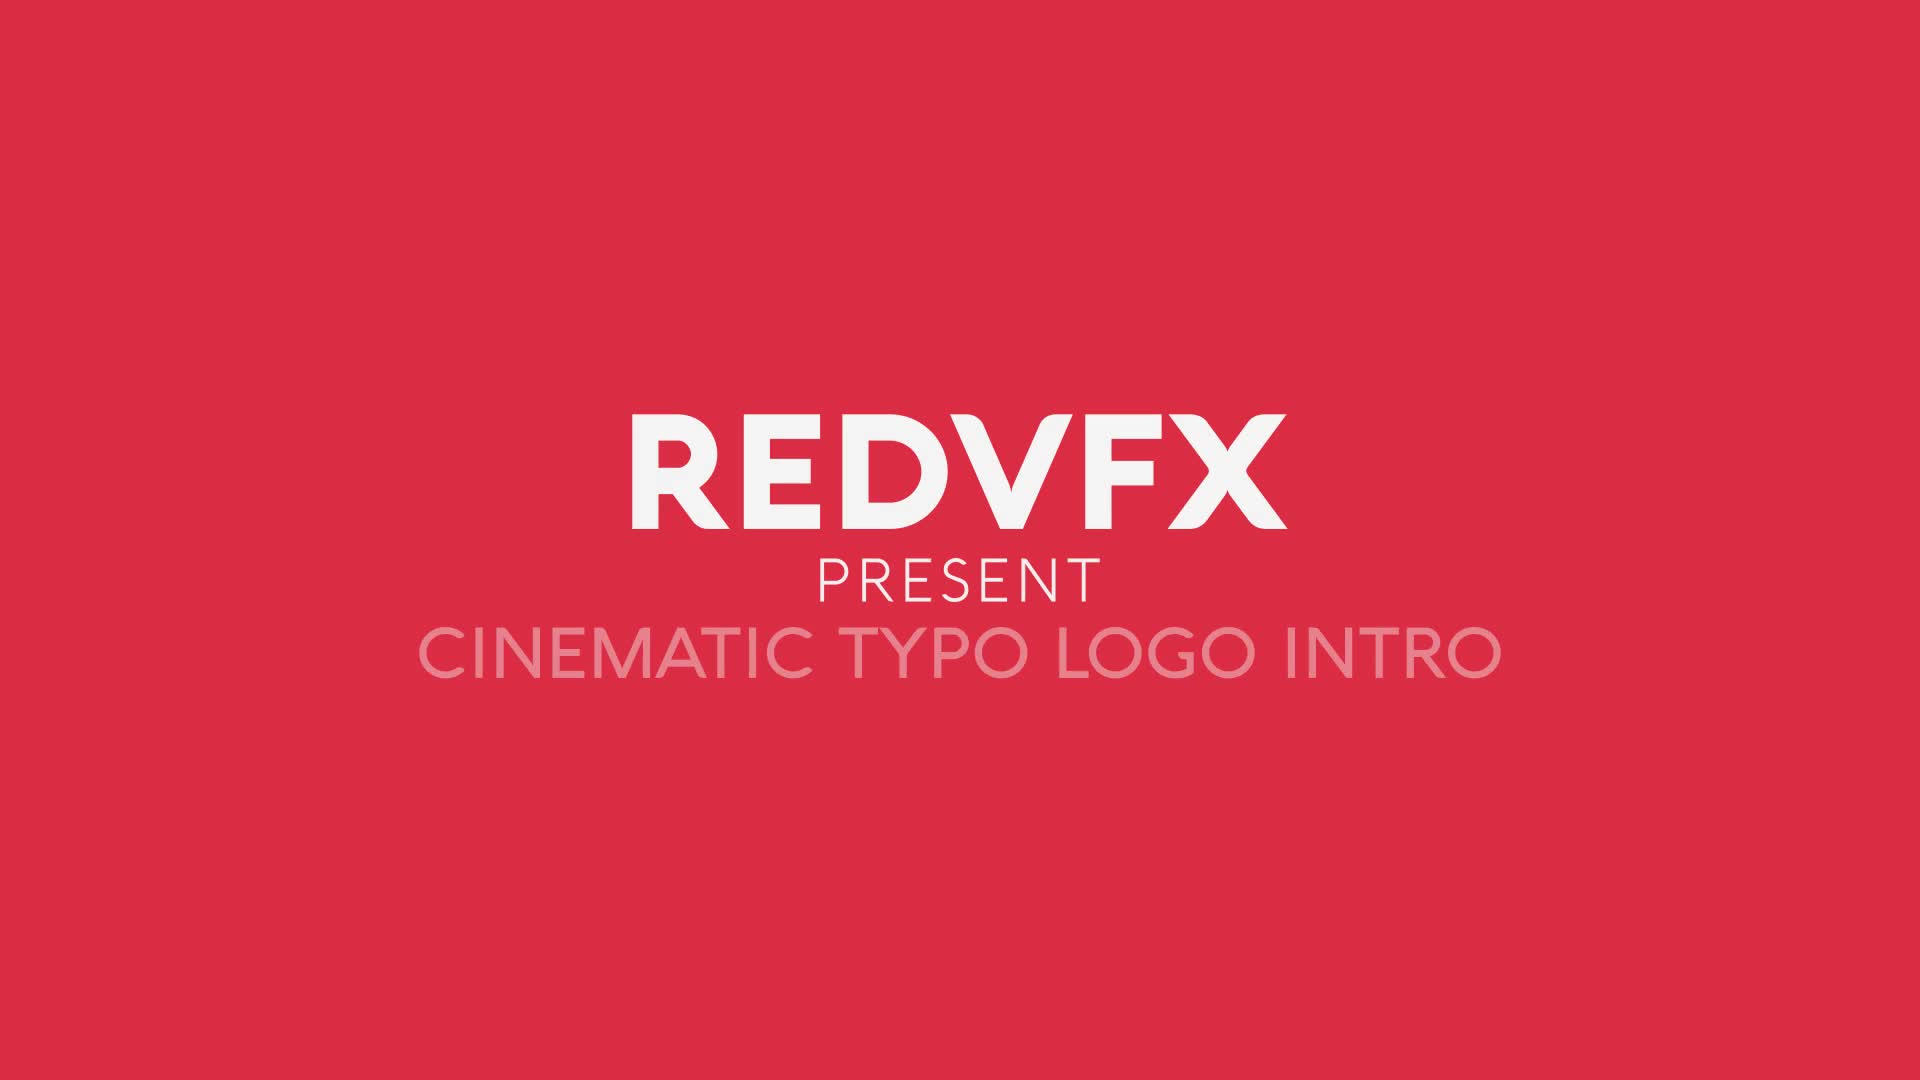 Cinematic Typo Logo for Premiere Pro Videohive 36487427 Premiere Pro Image 1